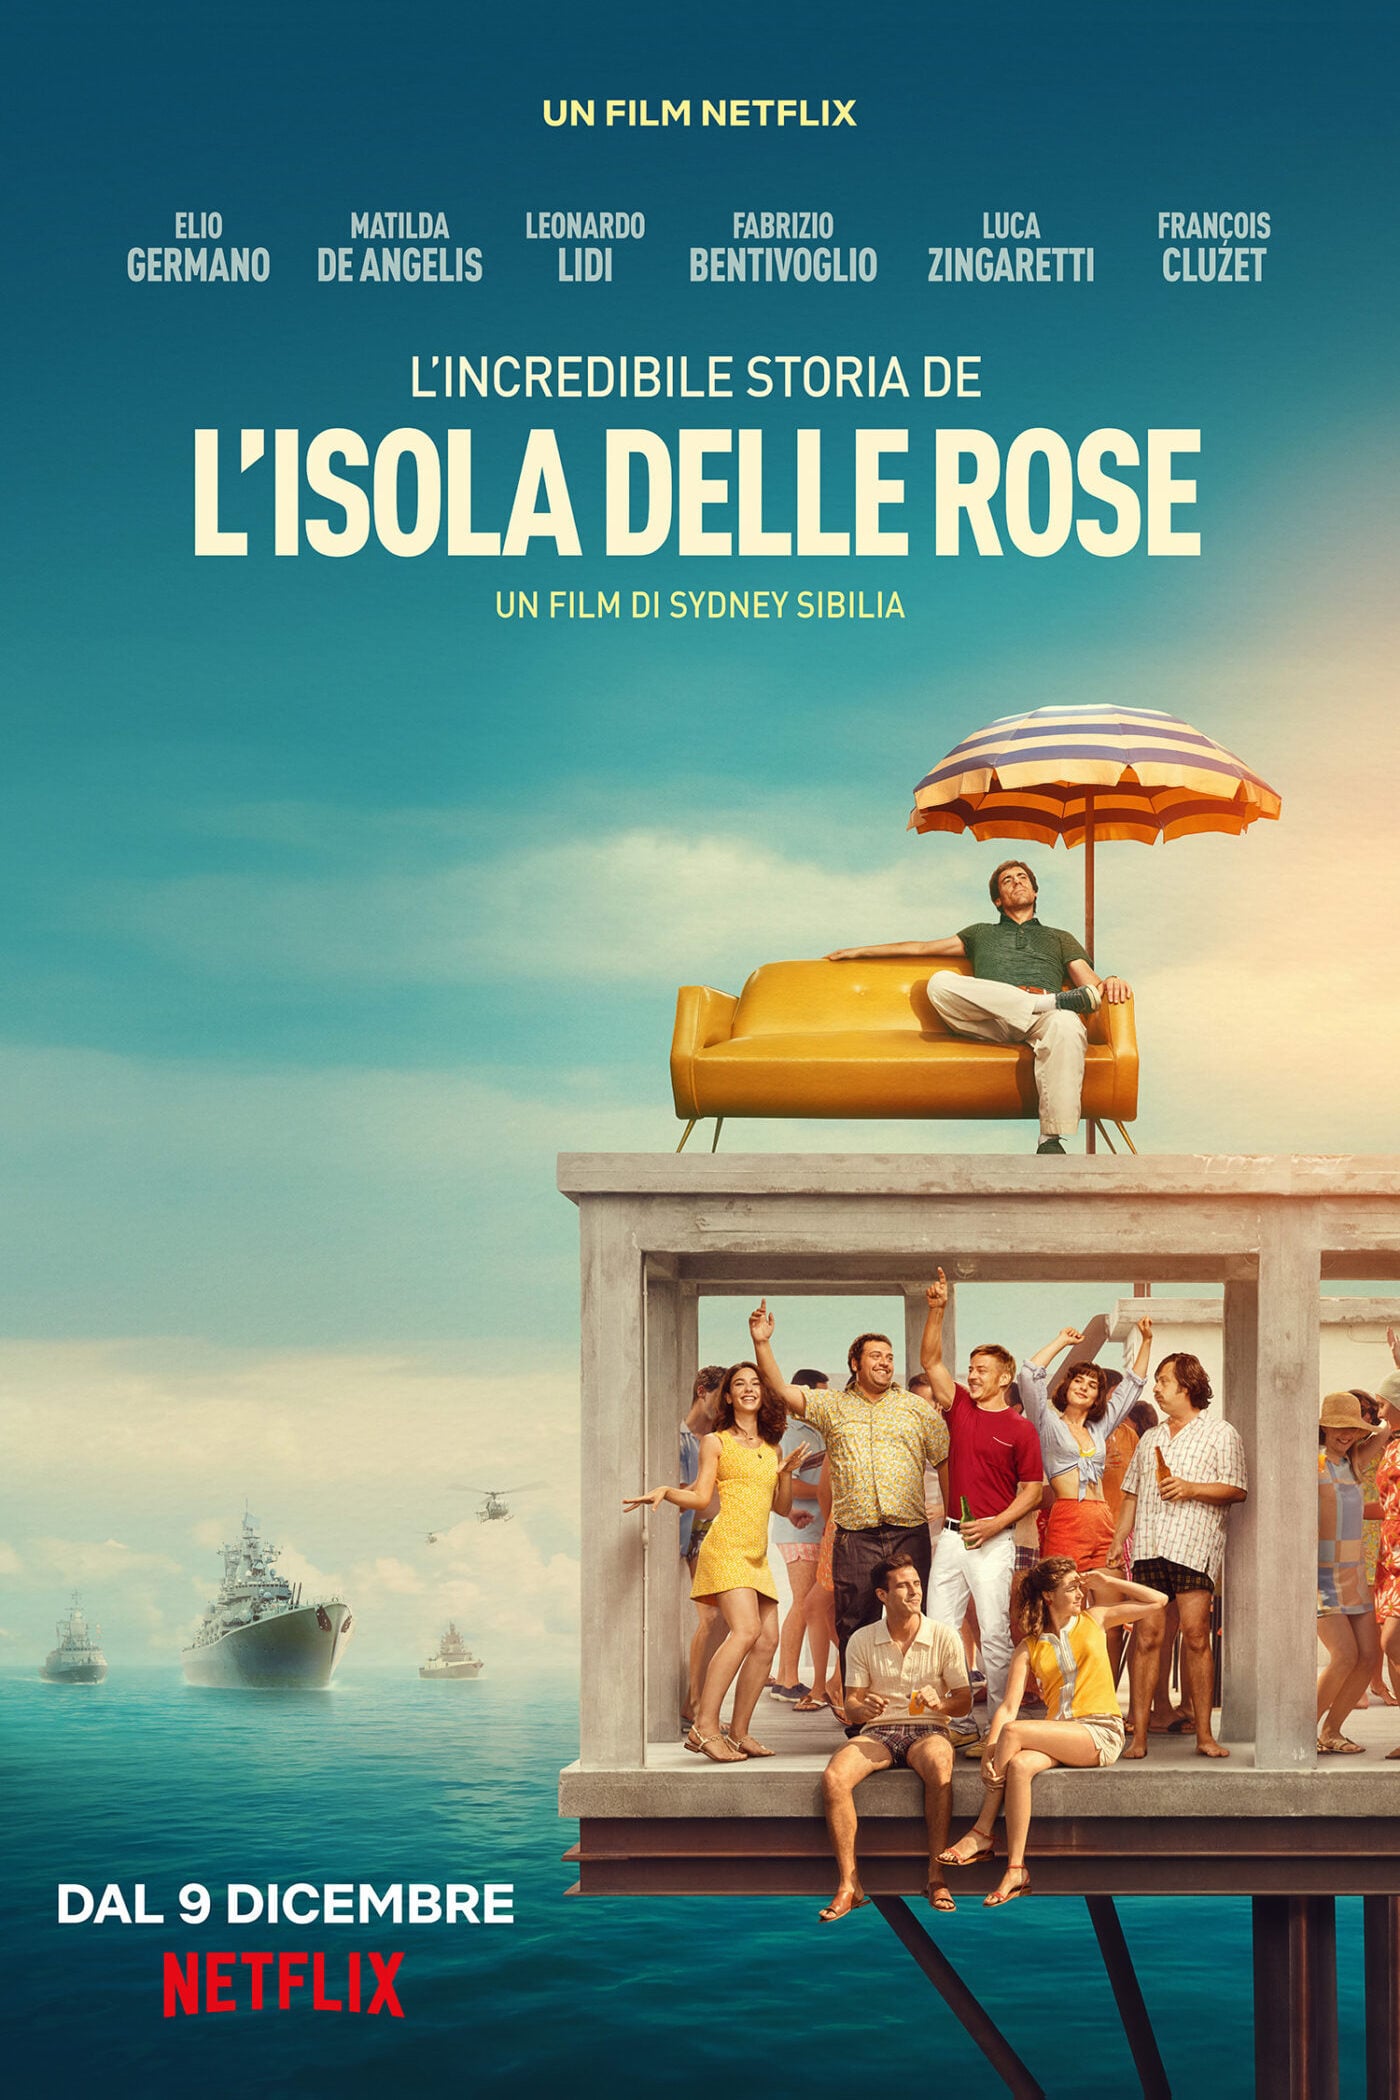 ดูหนังออนไลน์ Rose Island (2020) เกาะสวรรค์ฝันอิสระ